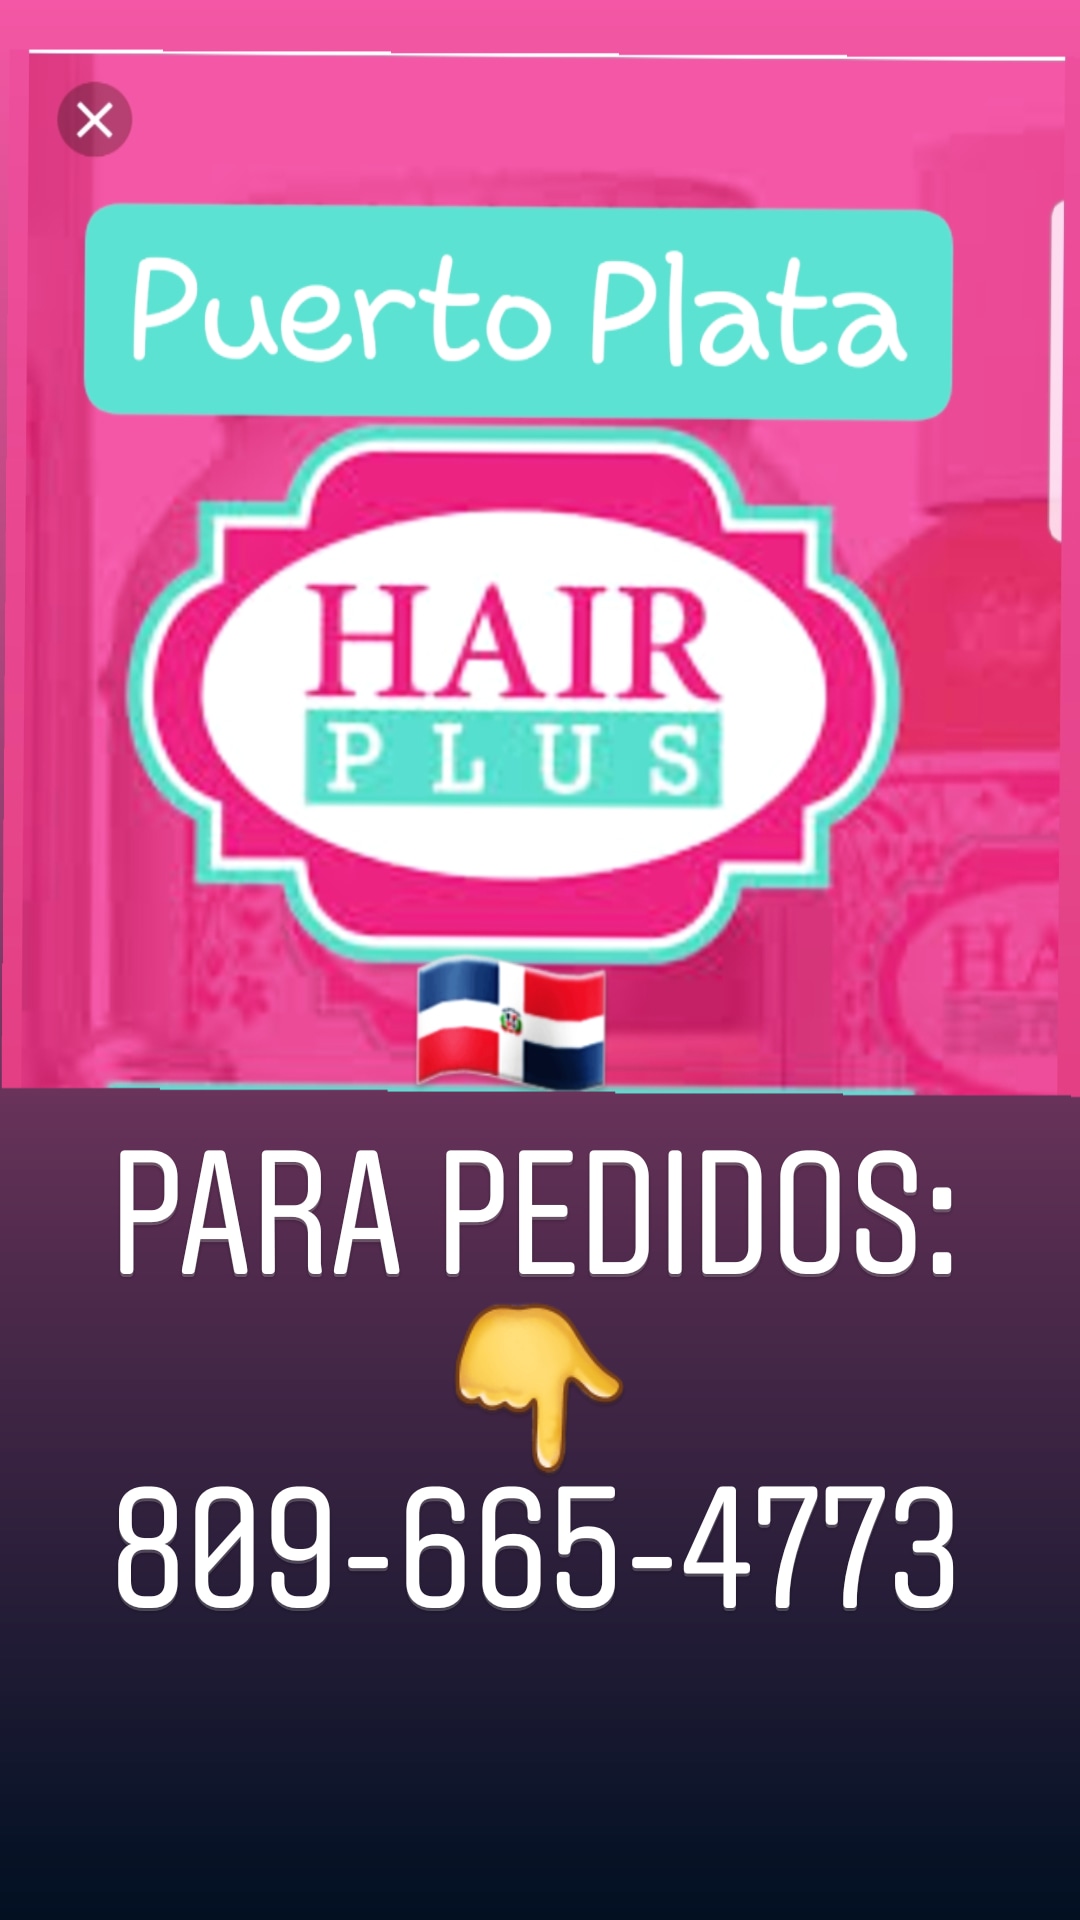 Hair Plus Puerto Plata